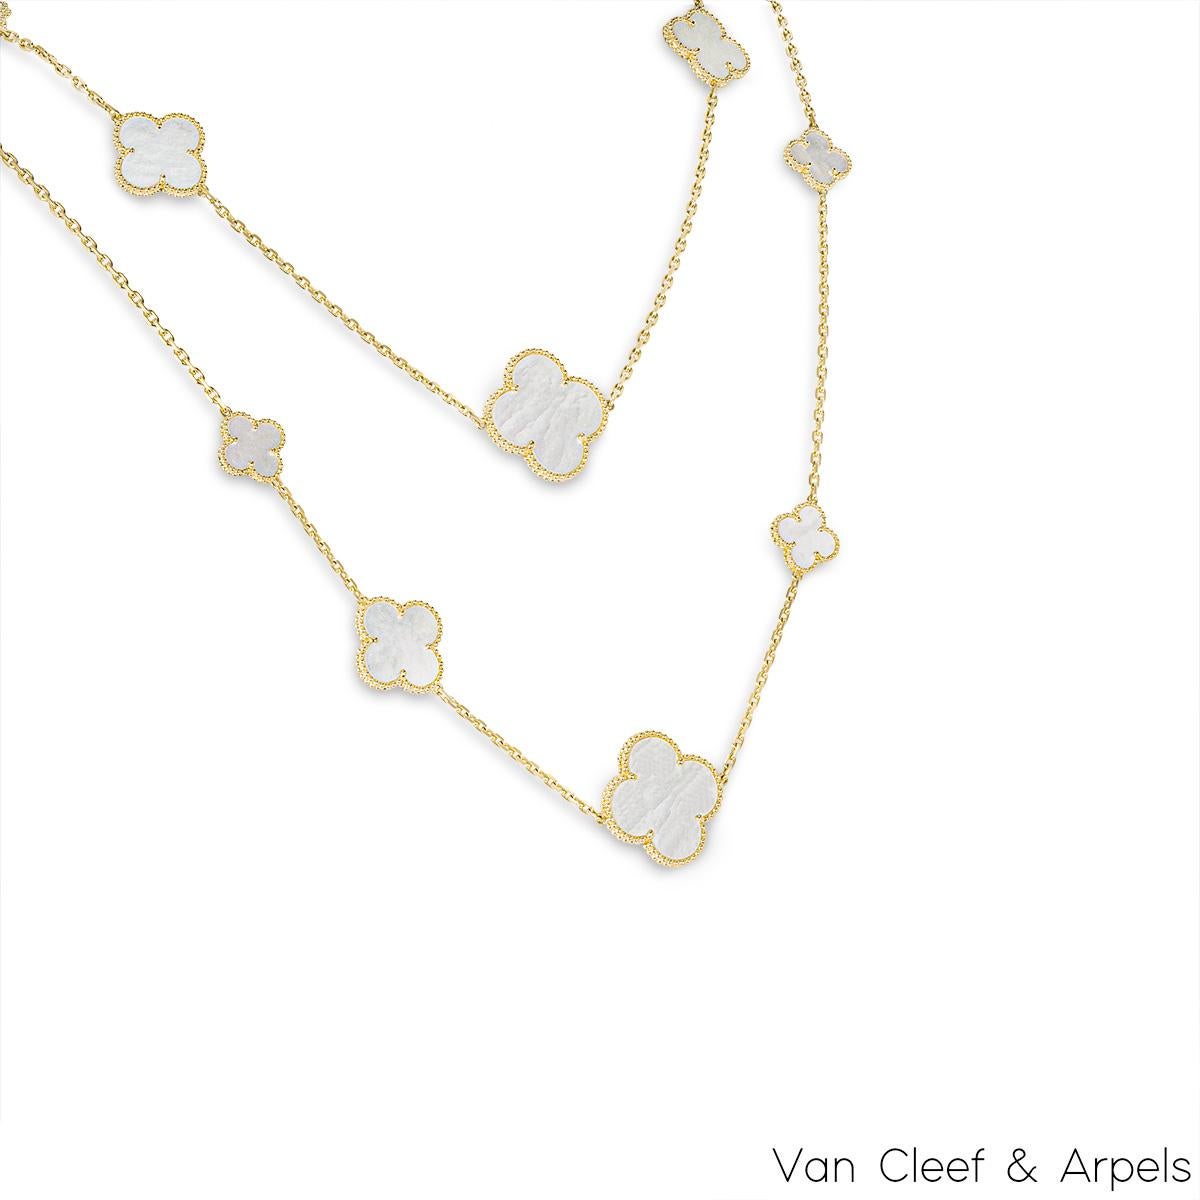 Superbe collier en or jaune 18 carats Van Cleef & Arpels de la collection Magic Alhambra. Le collier comprend 16 motifs emblématiques de trèfle à quatre feuilles de taille alternée, sertis d'incrustations de nacre et complétés par un bord extérieur